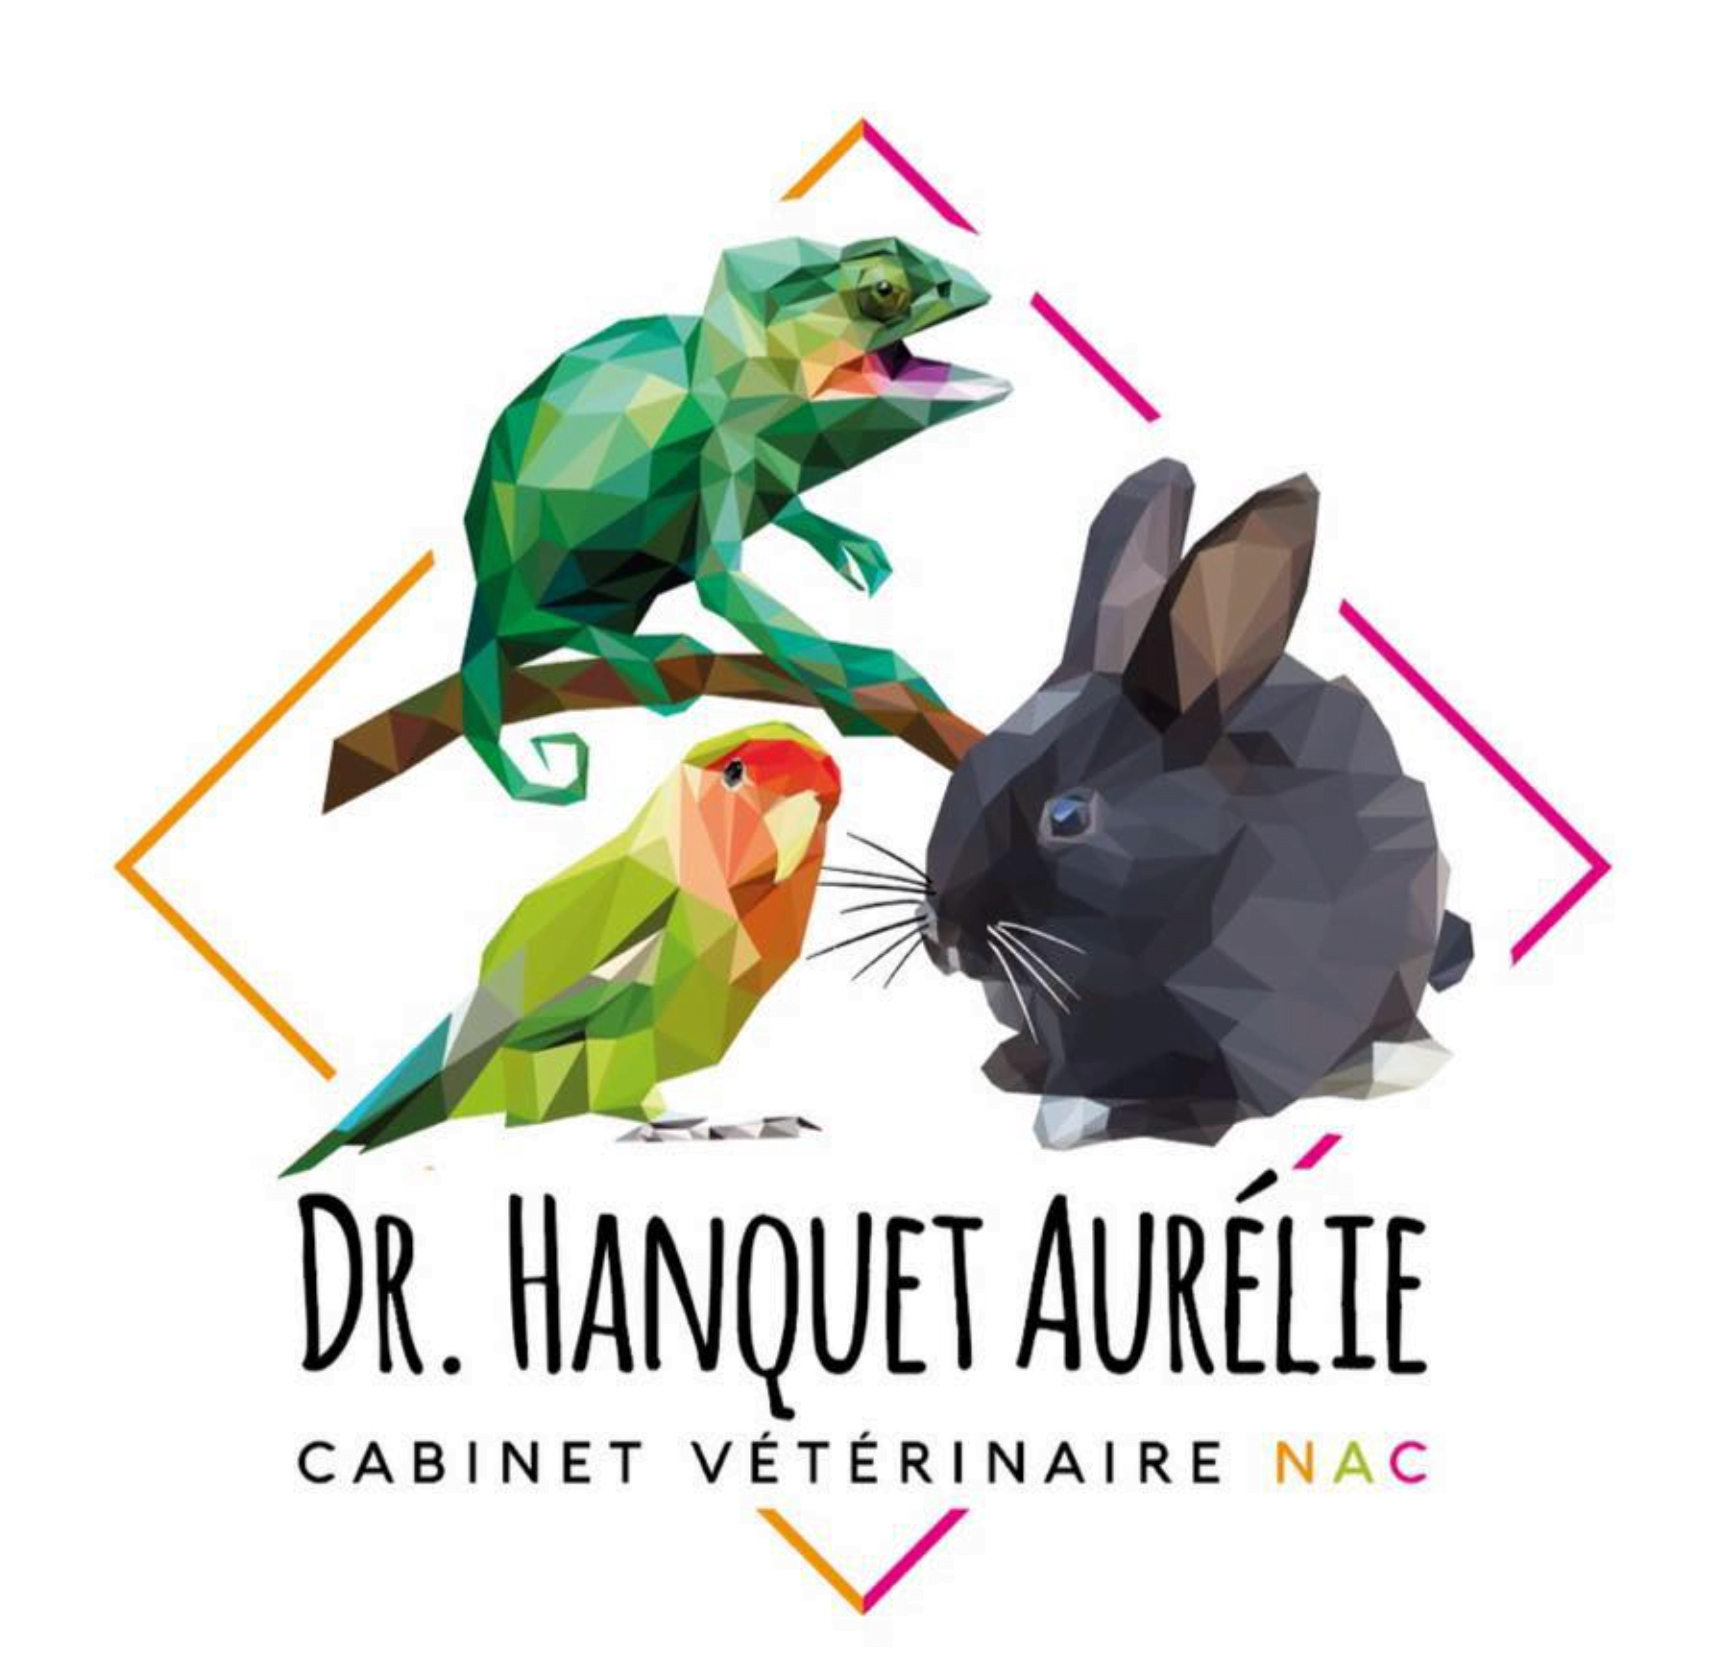 Aurélie Hanquet, Vétérinaire NAC Exclusif